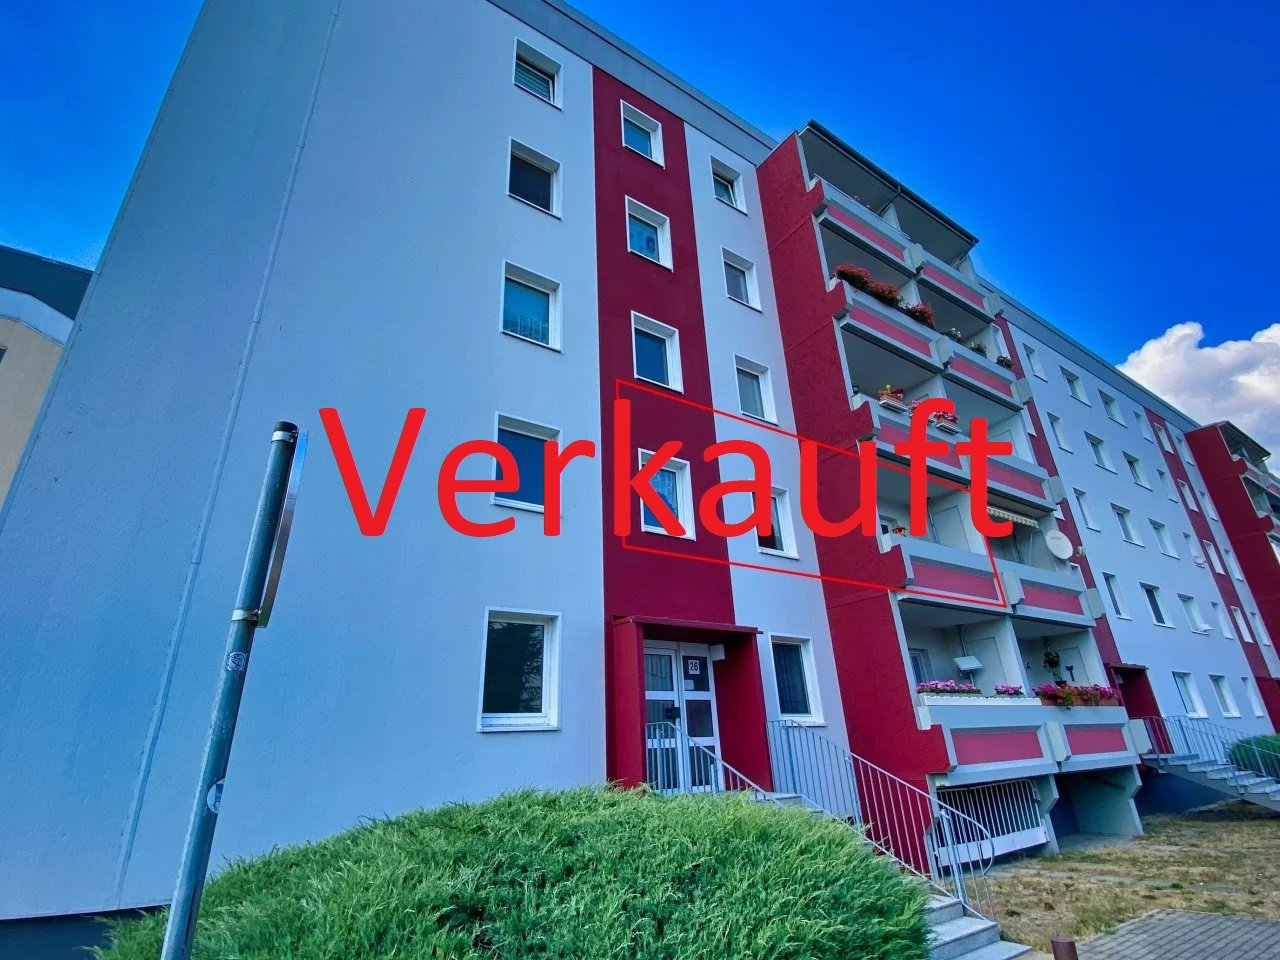 Verkauft: 4-Zimmer-Wohnung in Torgau